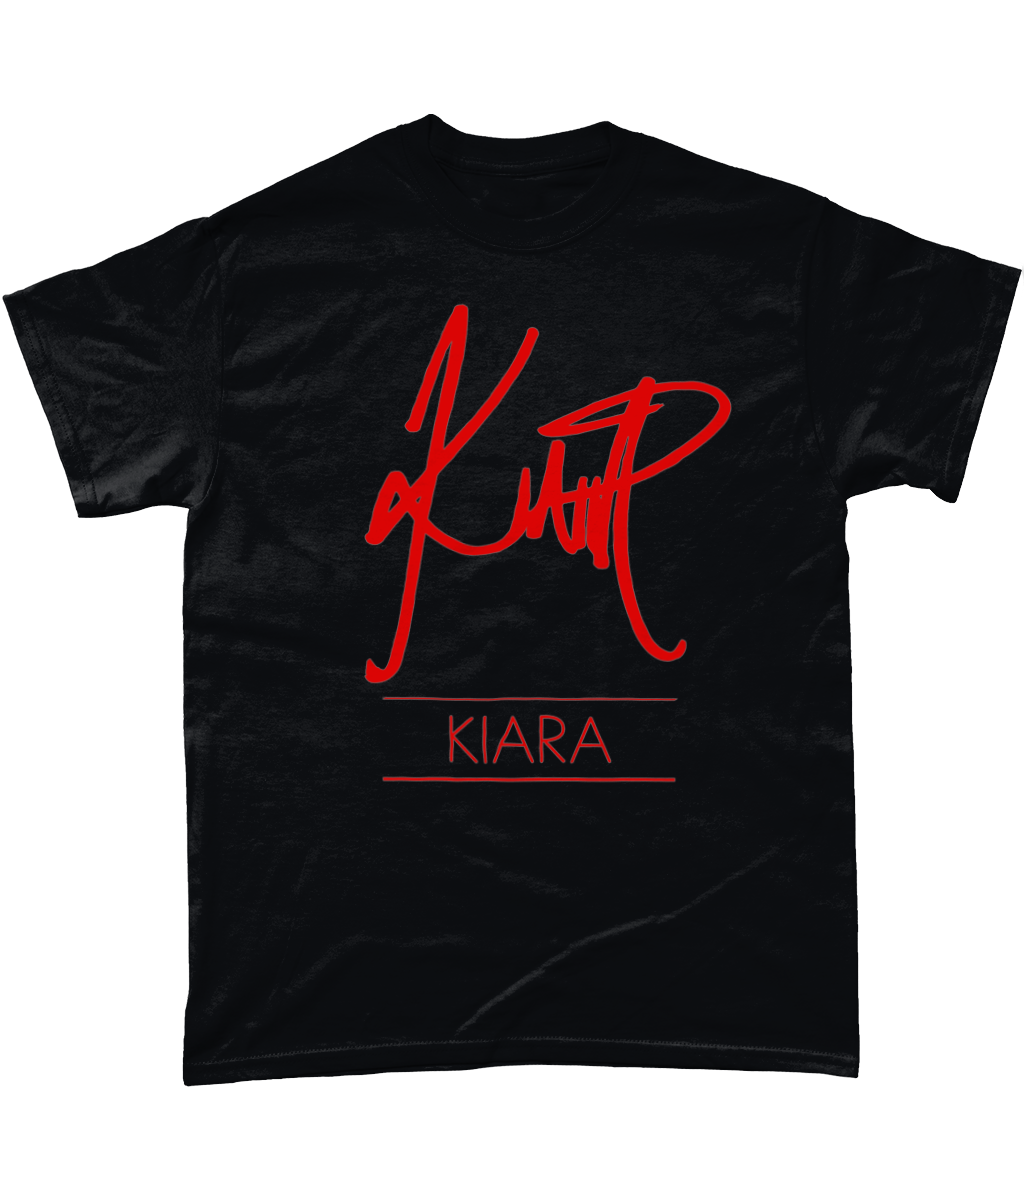 Kiara - T-Shirt